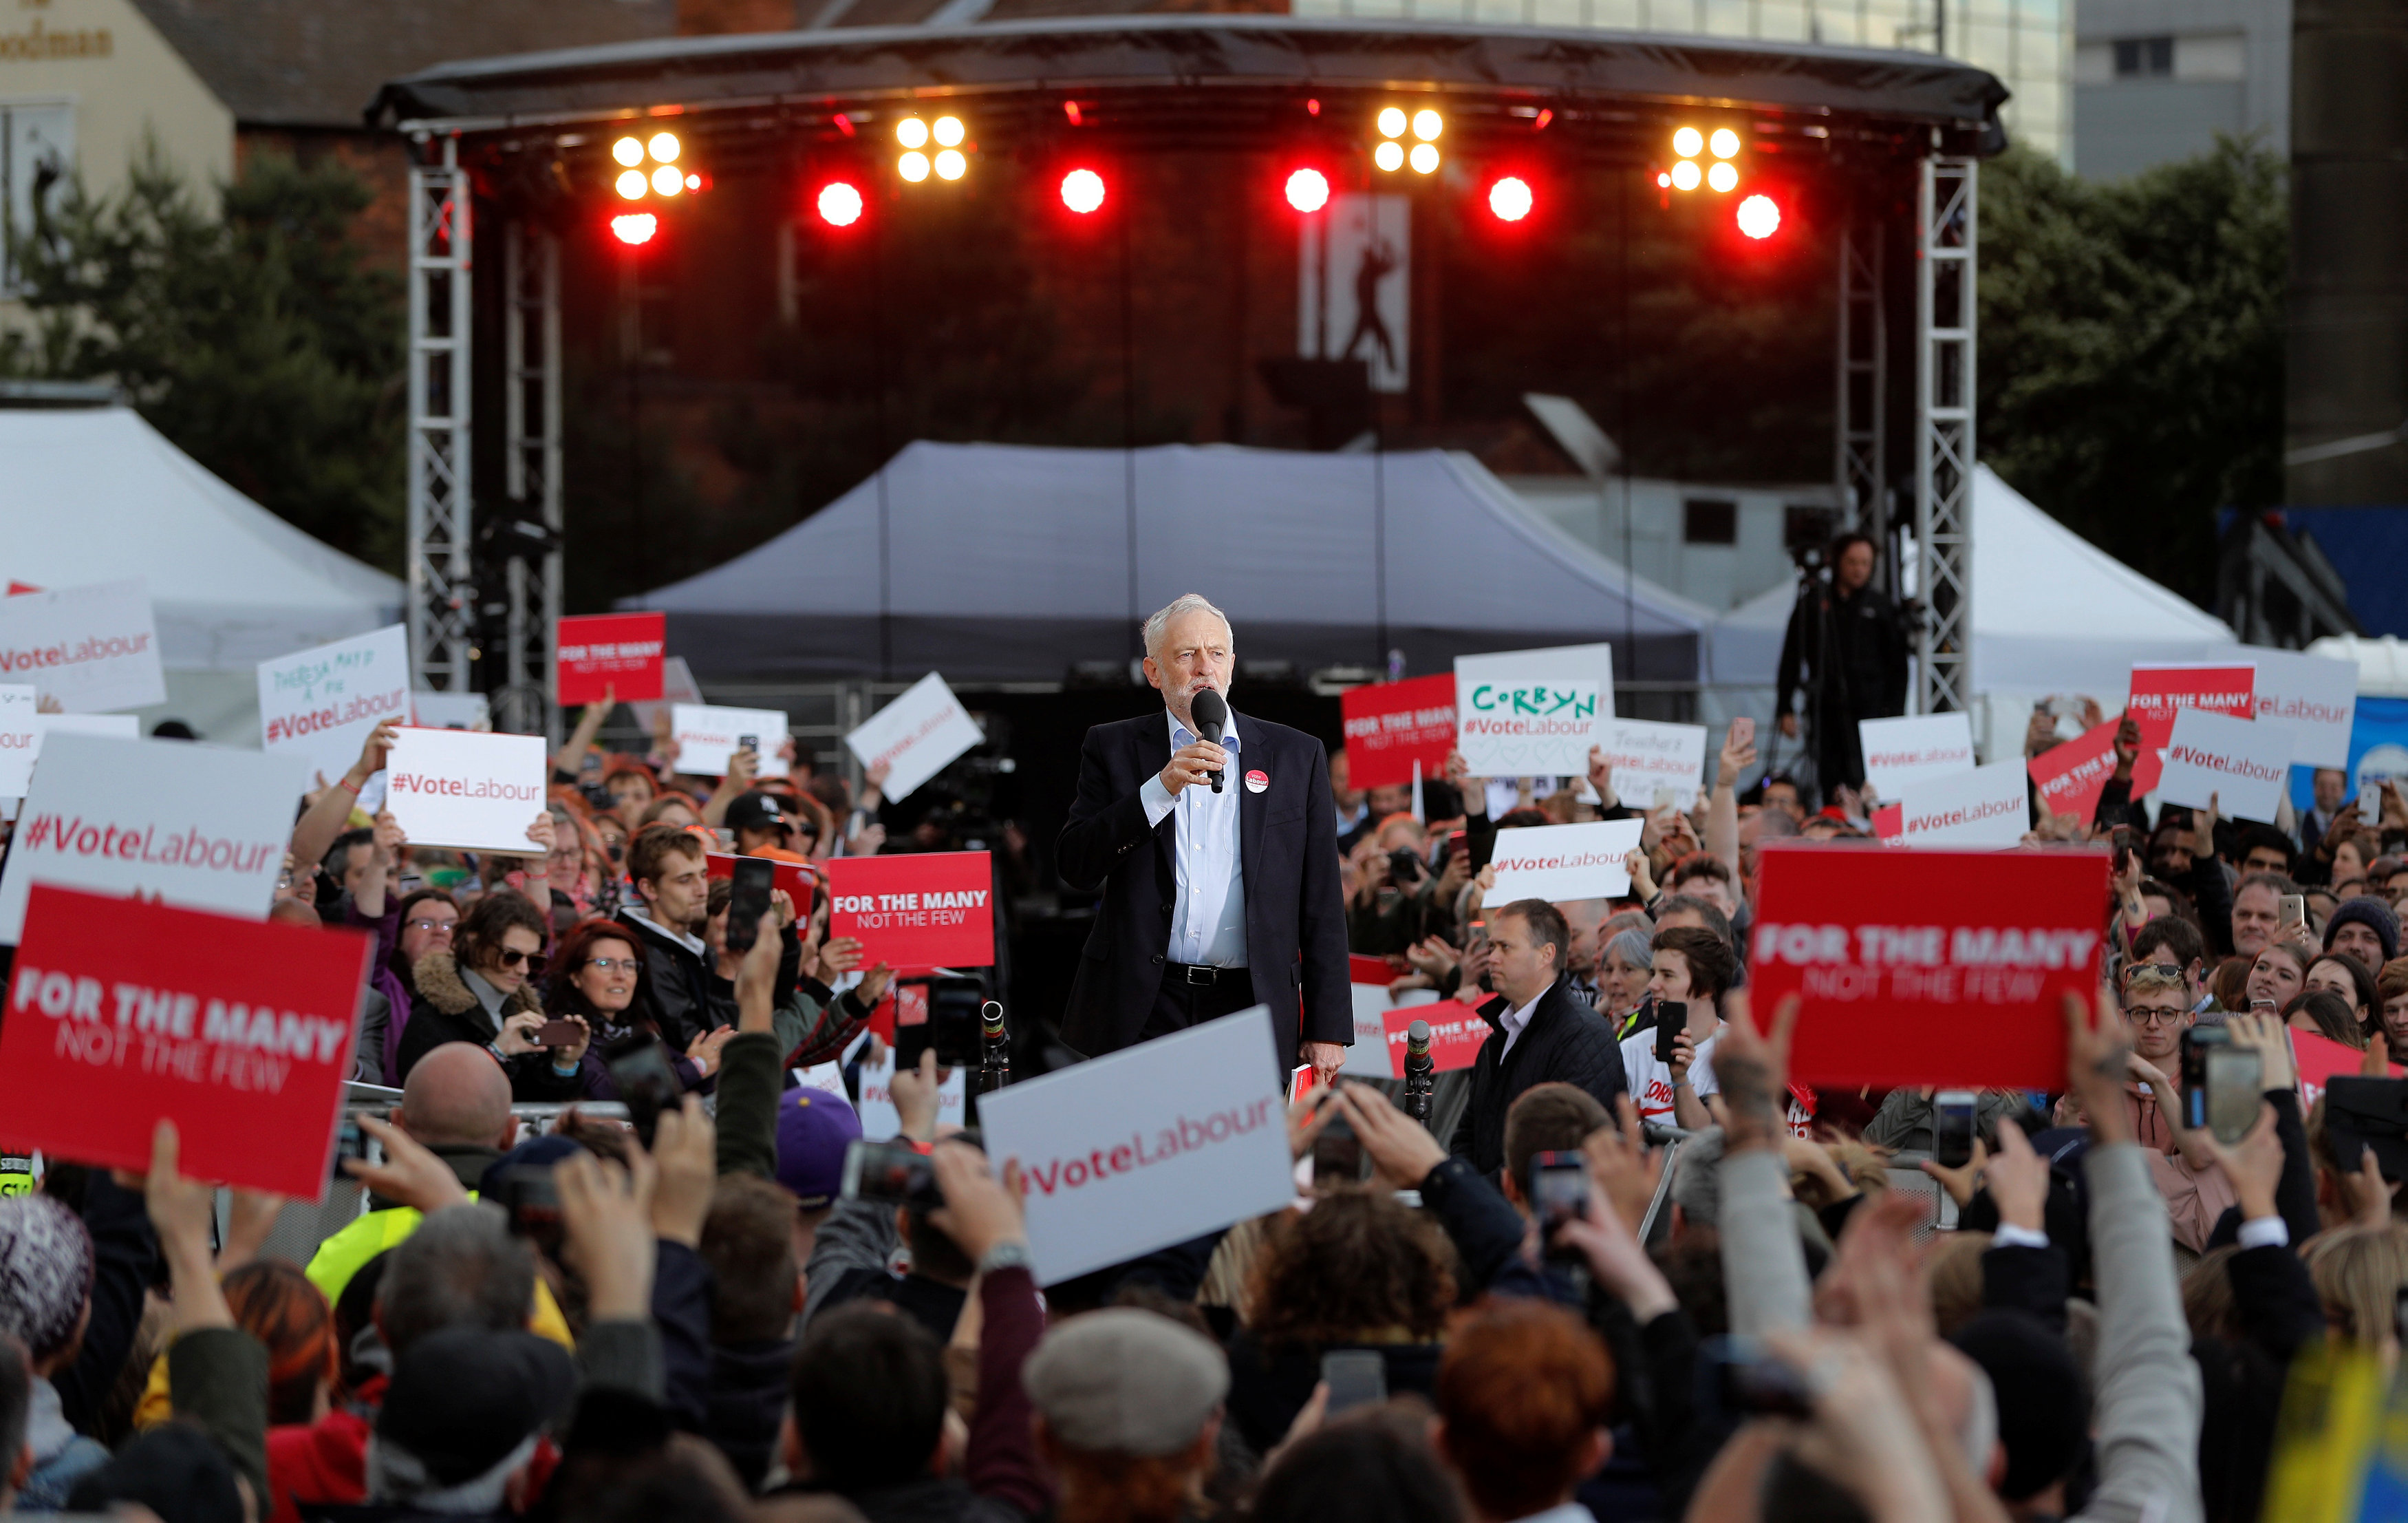 جيريمي كوربين زعيم حزب العمل المعارض يتحدث إلى مؤيديه